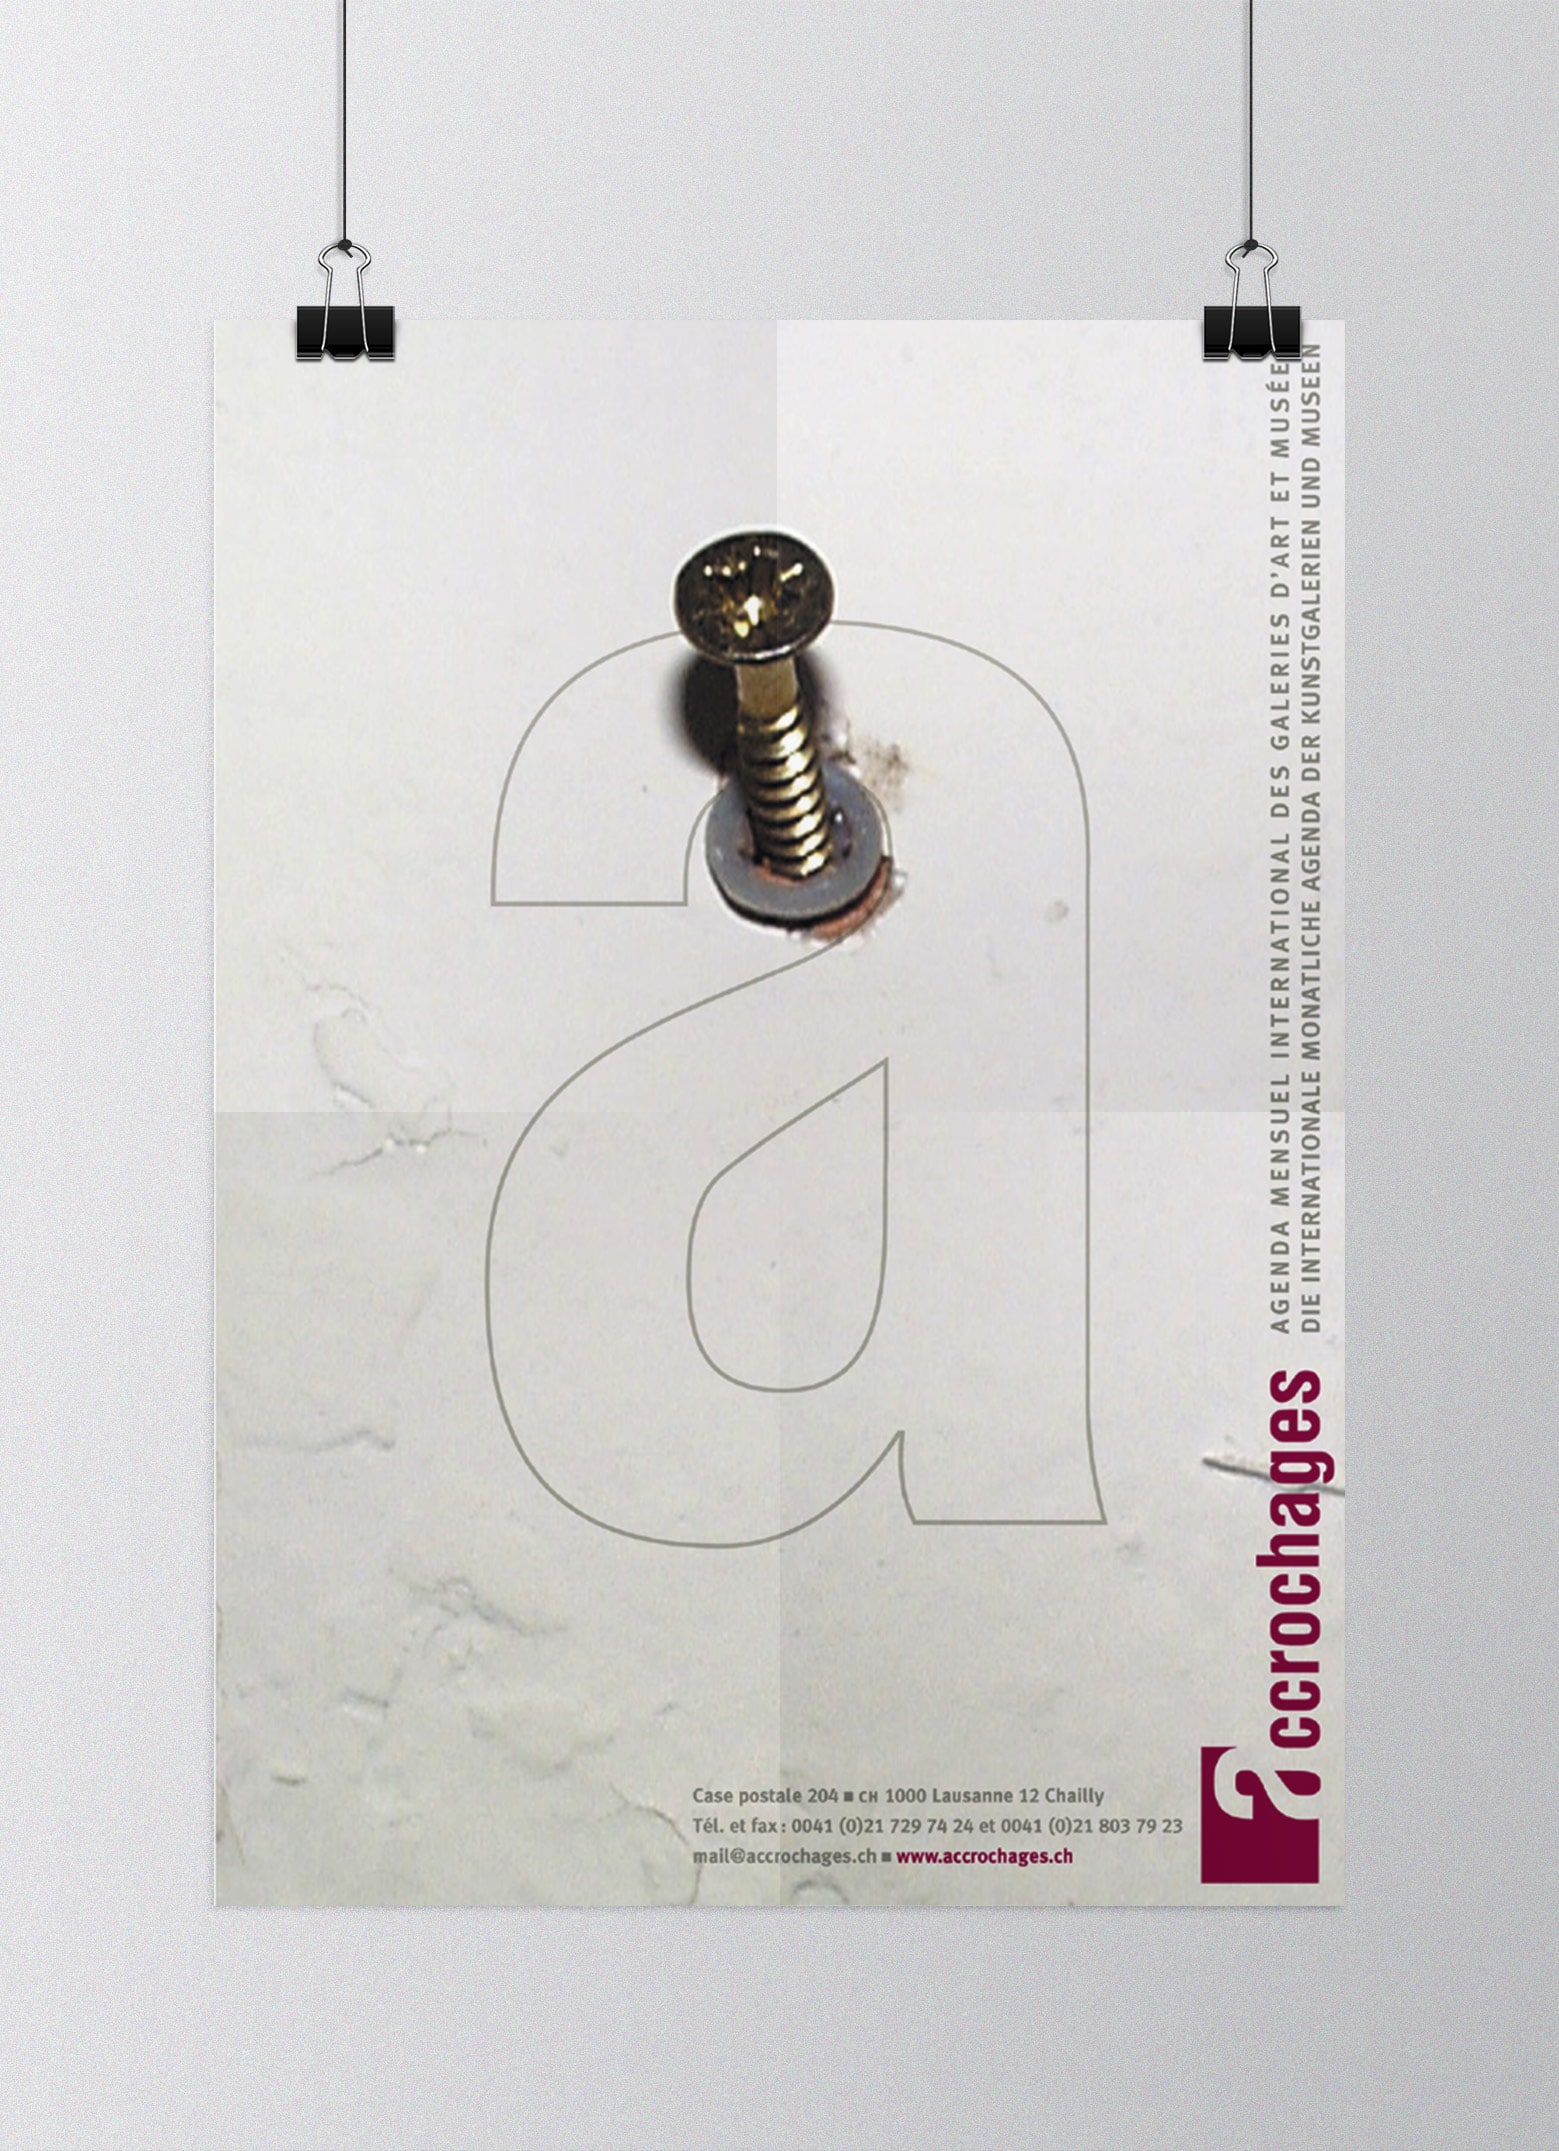 Accrochages magazine d'art et agenda culturel de Suisse romande, direction artistique et mise en pages © Haymoz design, graphiste Lausanne